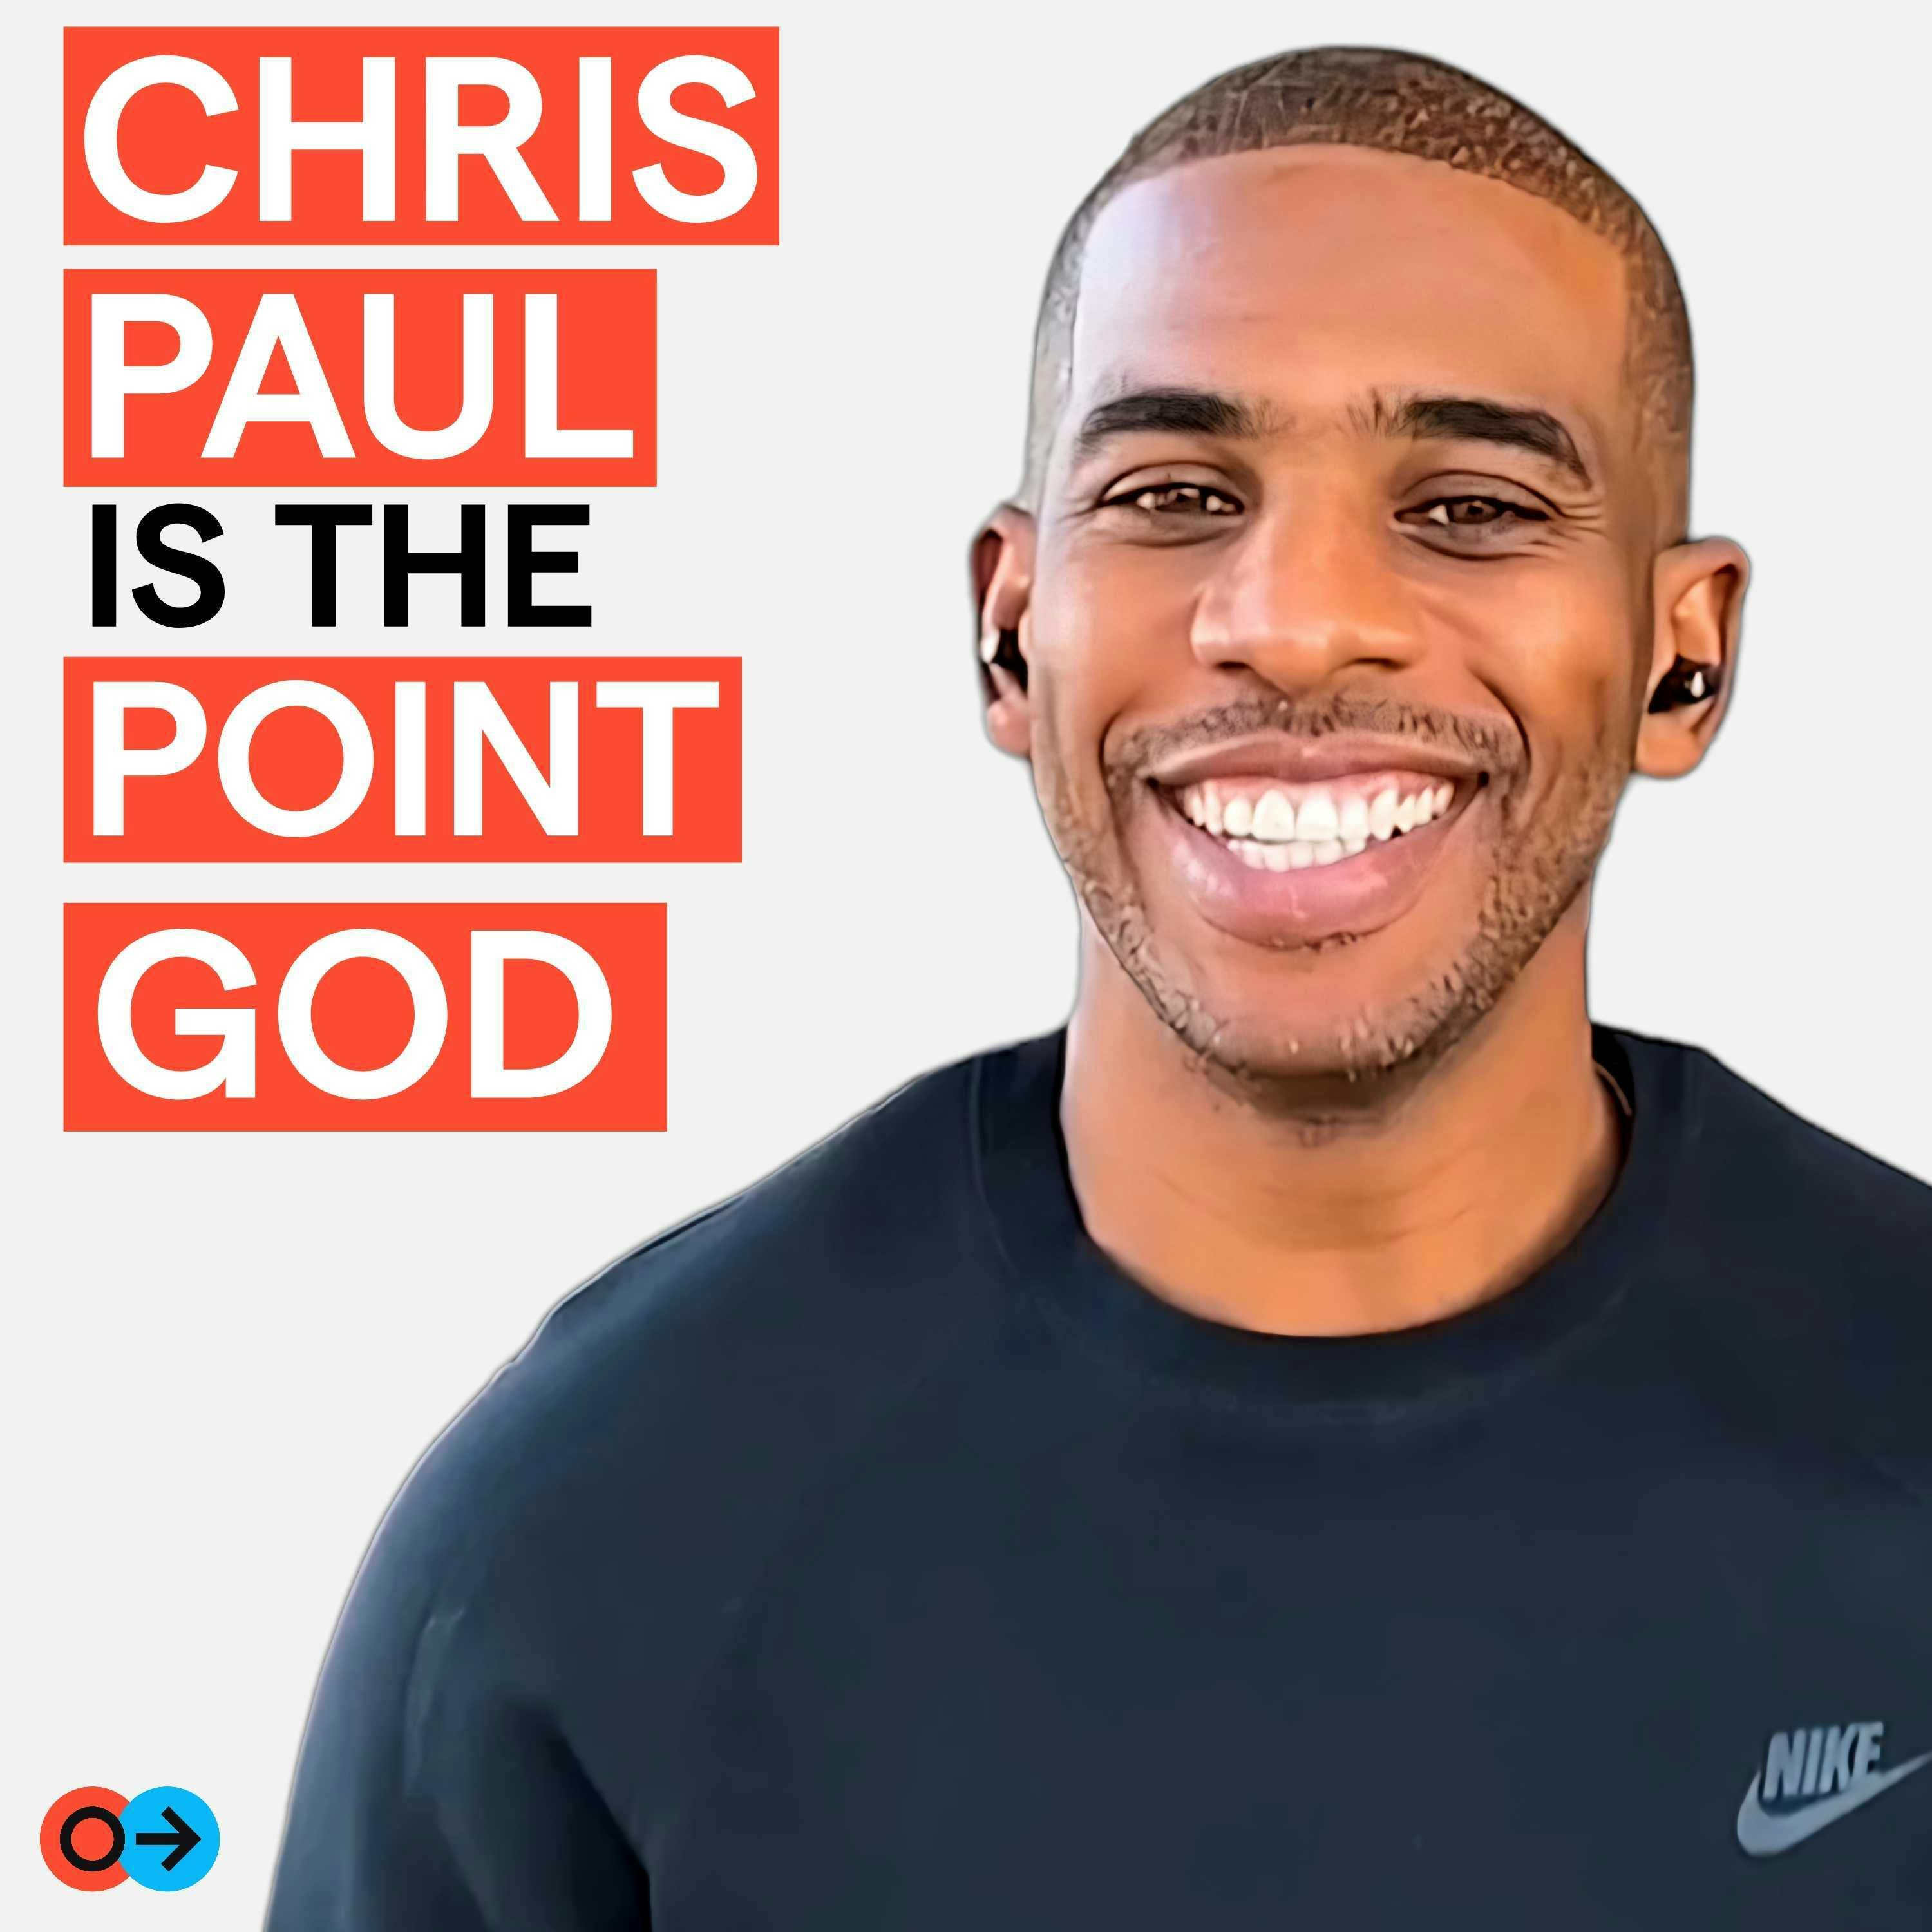 The Point God (feat. Chris Paul)